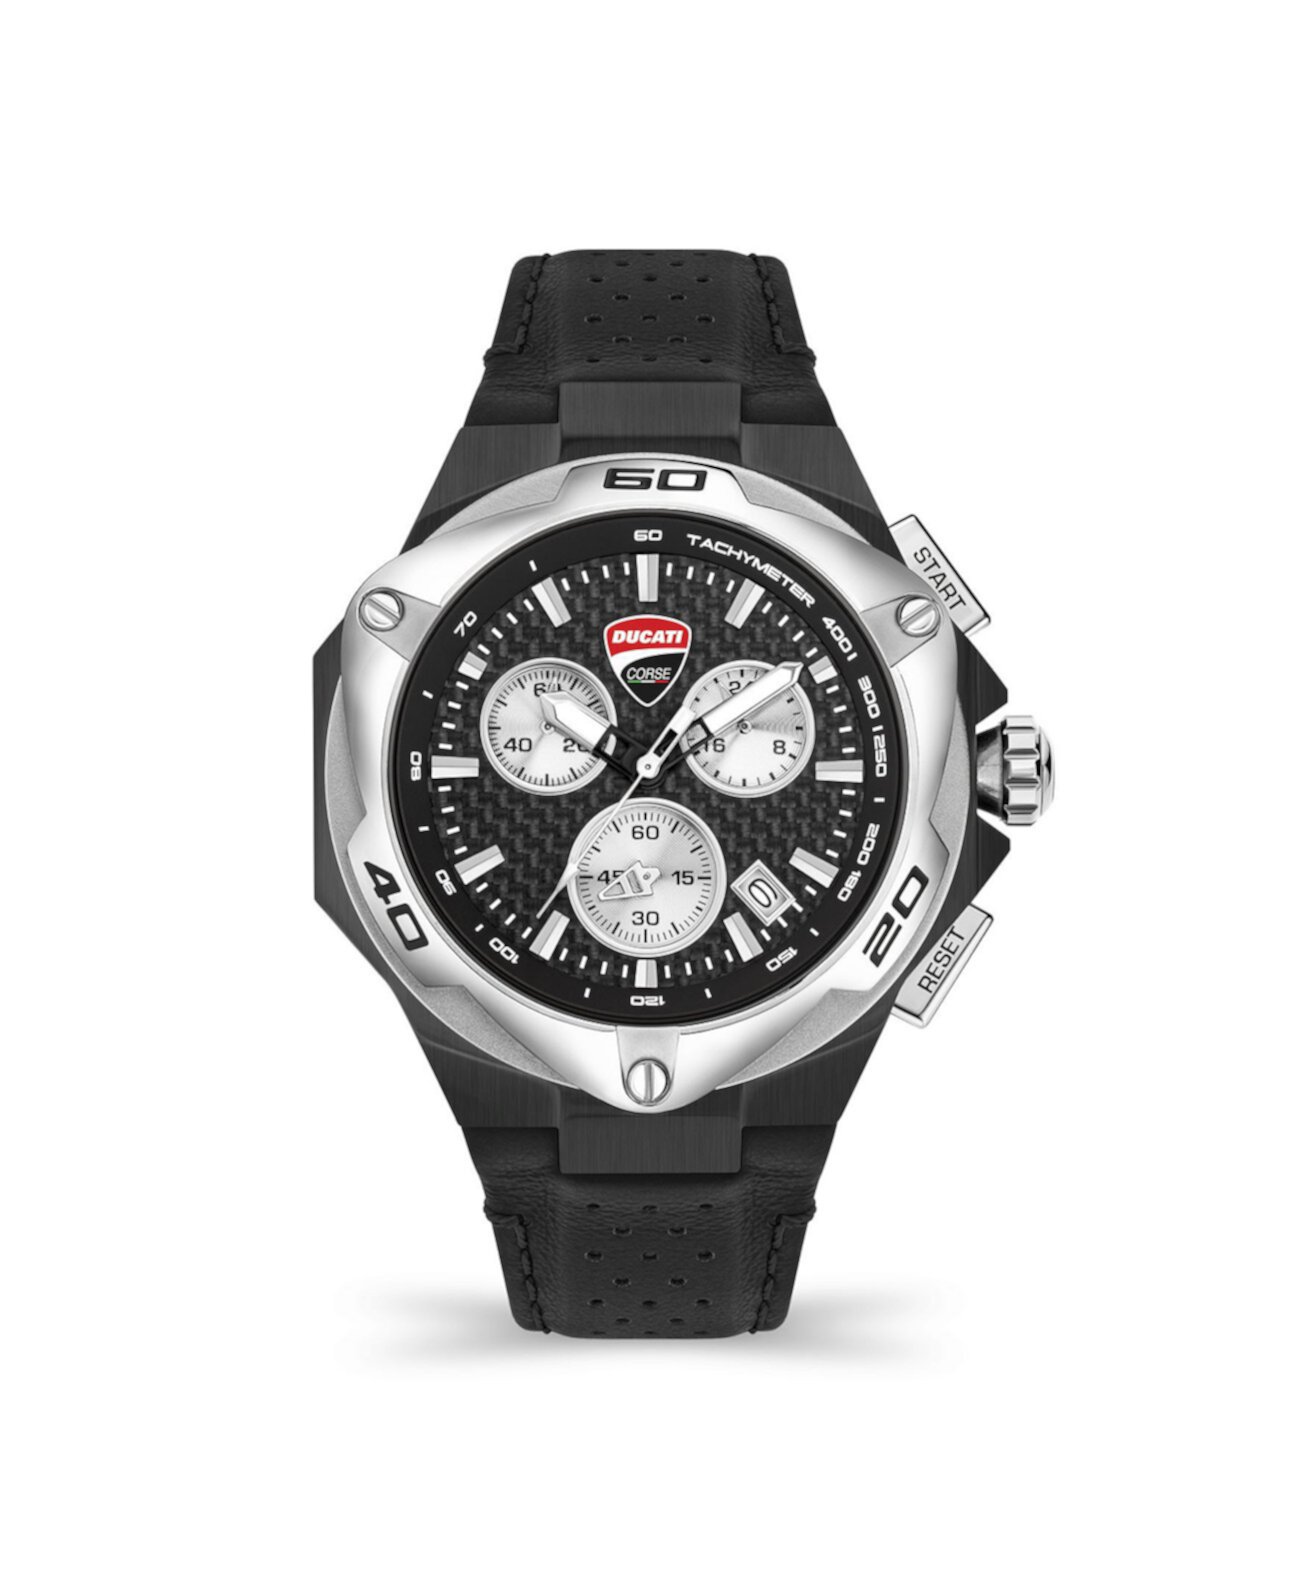 Мужские часы Motore Chronograph с черным ремешком из натуральной кожи 45 мм Ducati Corse